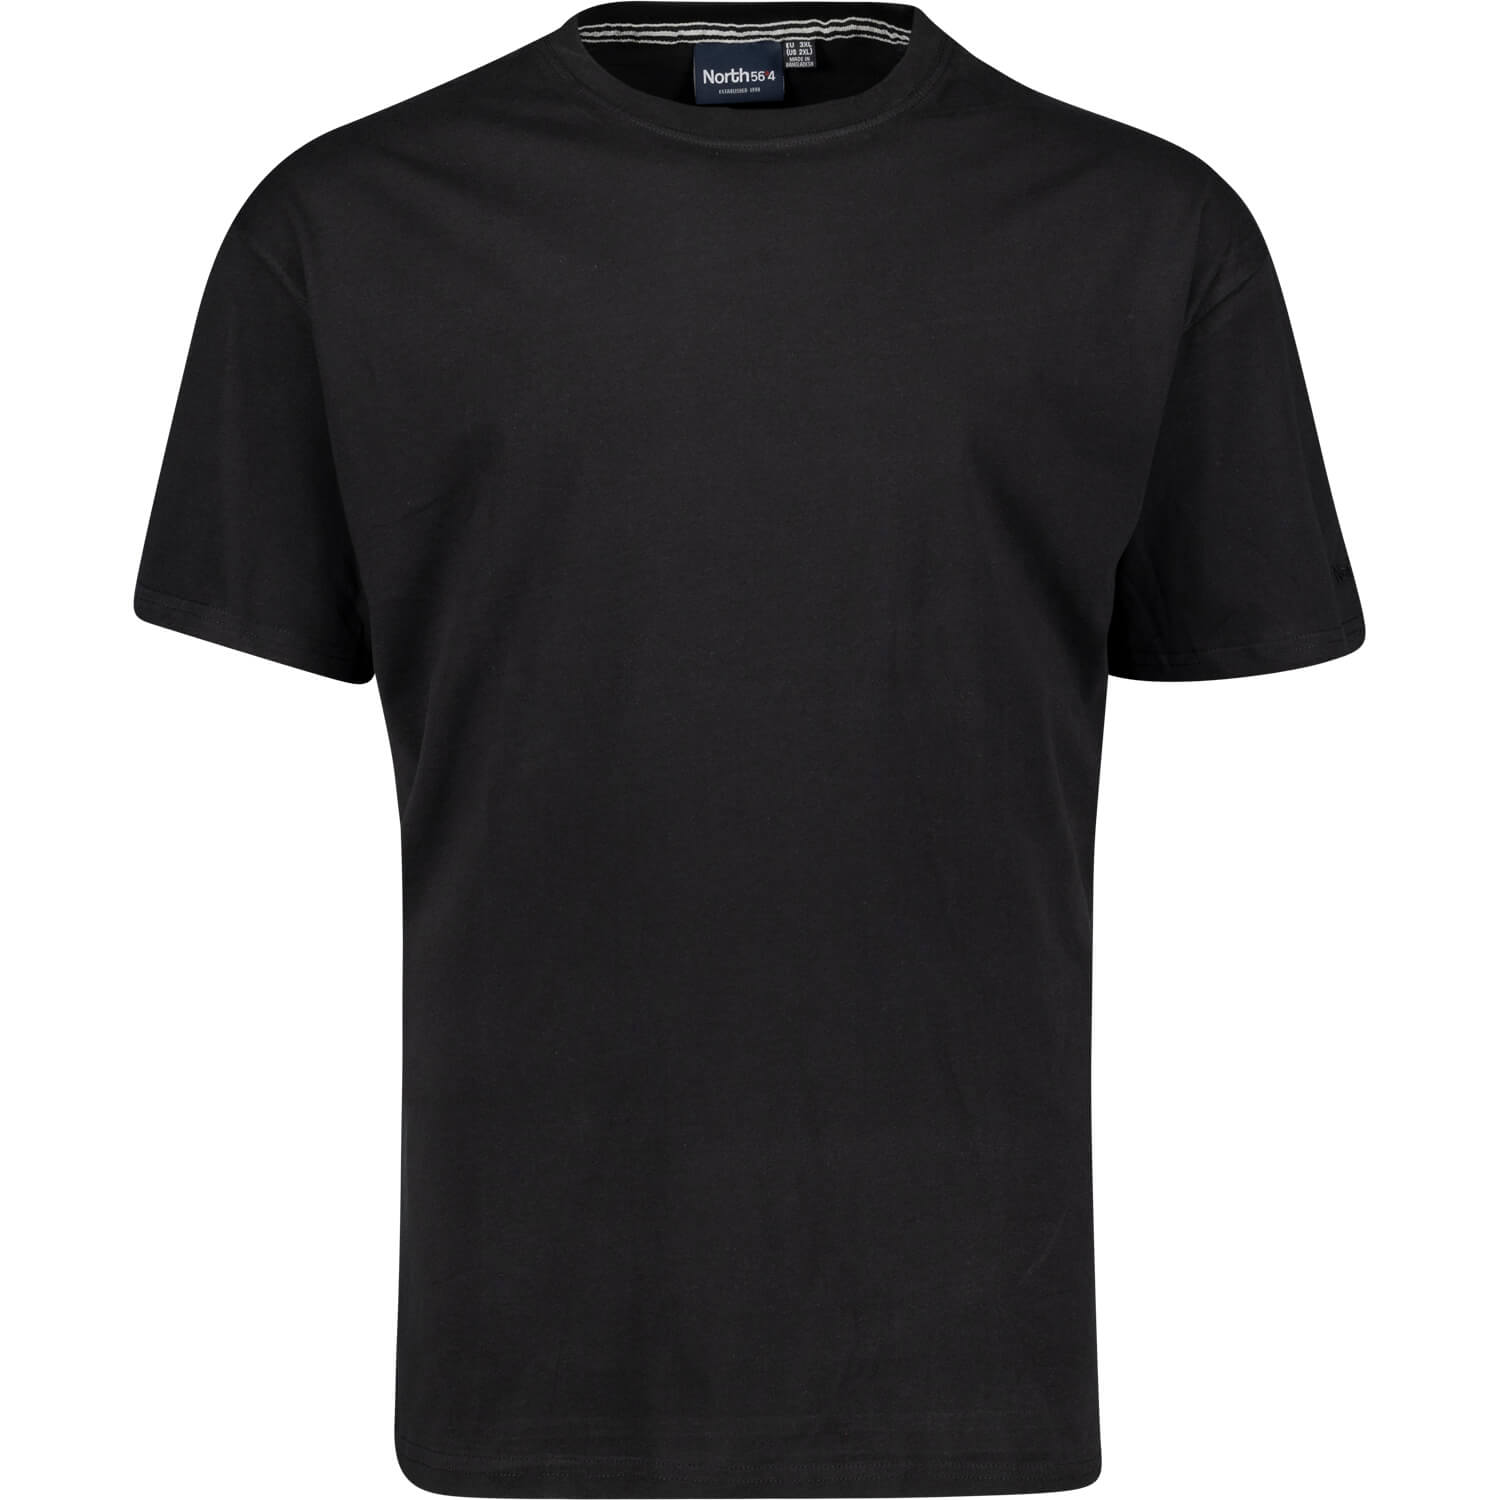 T-shirt noir basique col rond de North 56°4 // grandes tailles jusqu'au 8XL